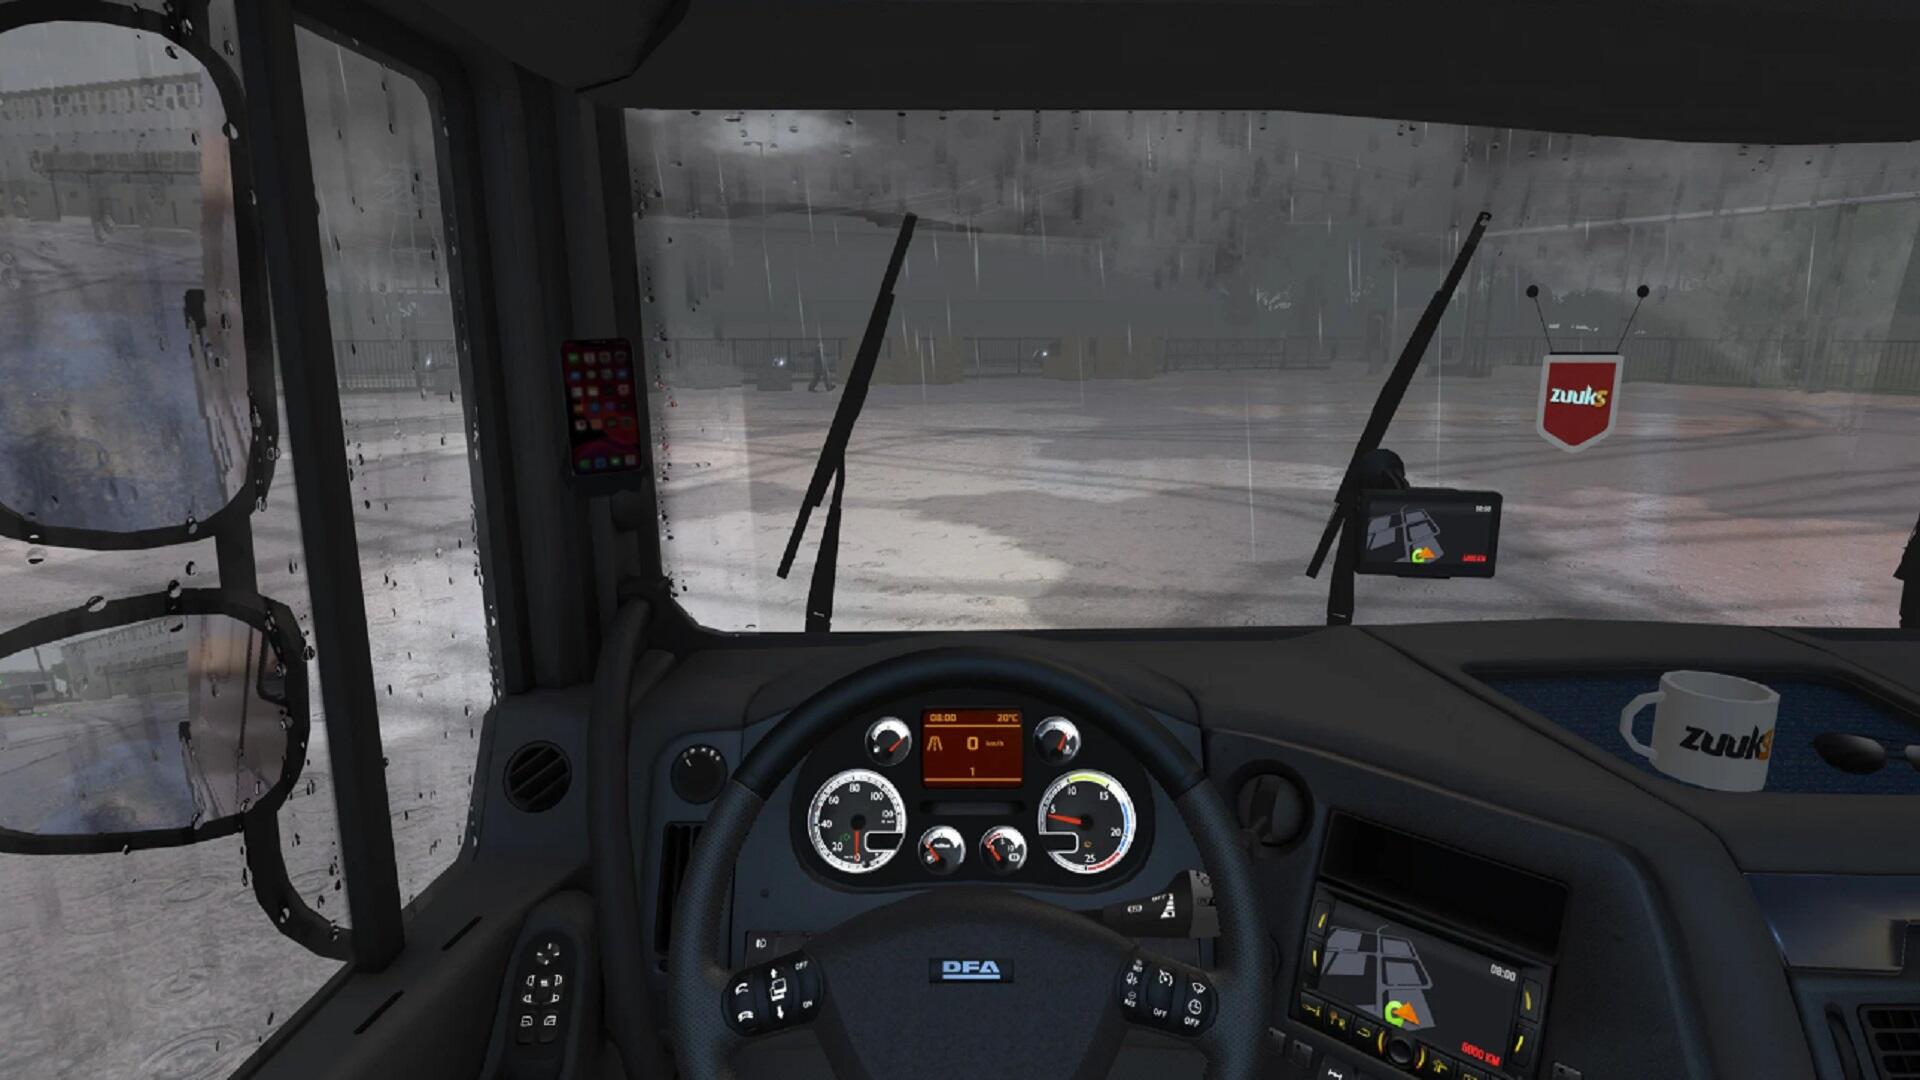 Truck Simulator : Ultimate para iPhone - Download